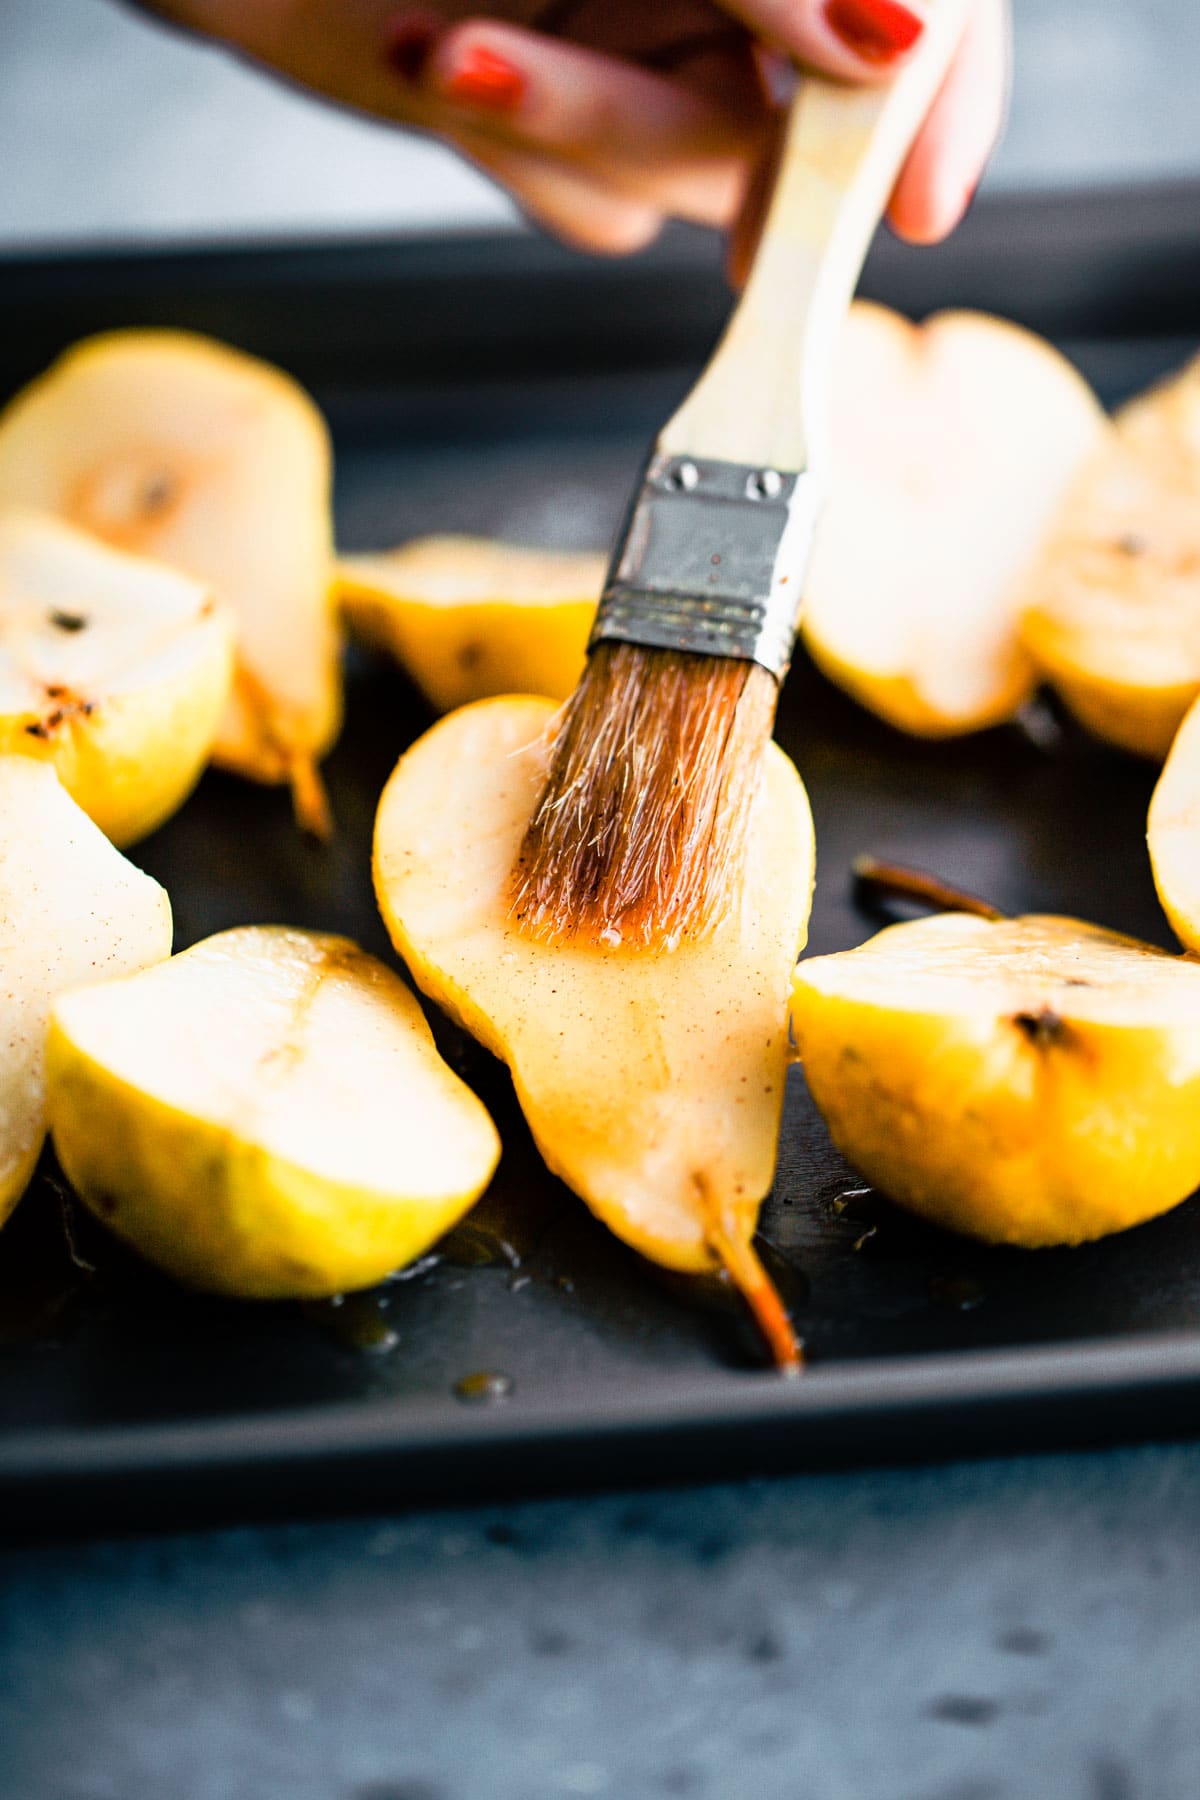 Maple glaze being brushed onto pear halves on baking sheet.